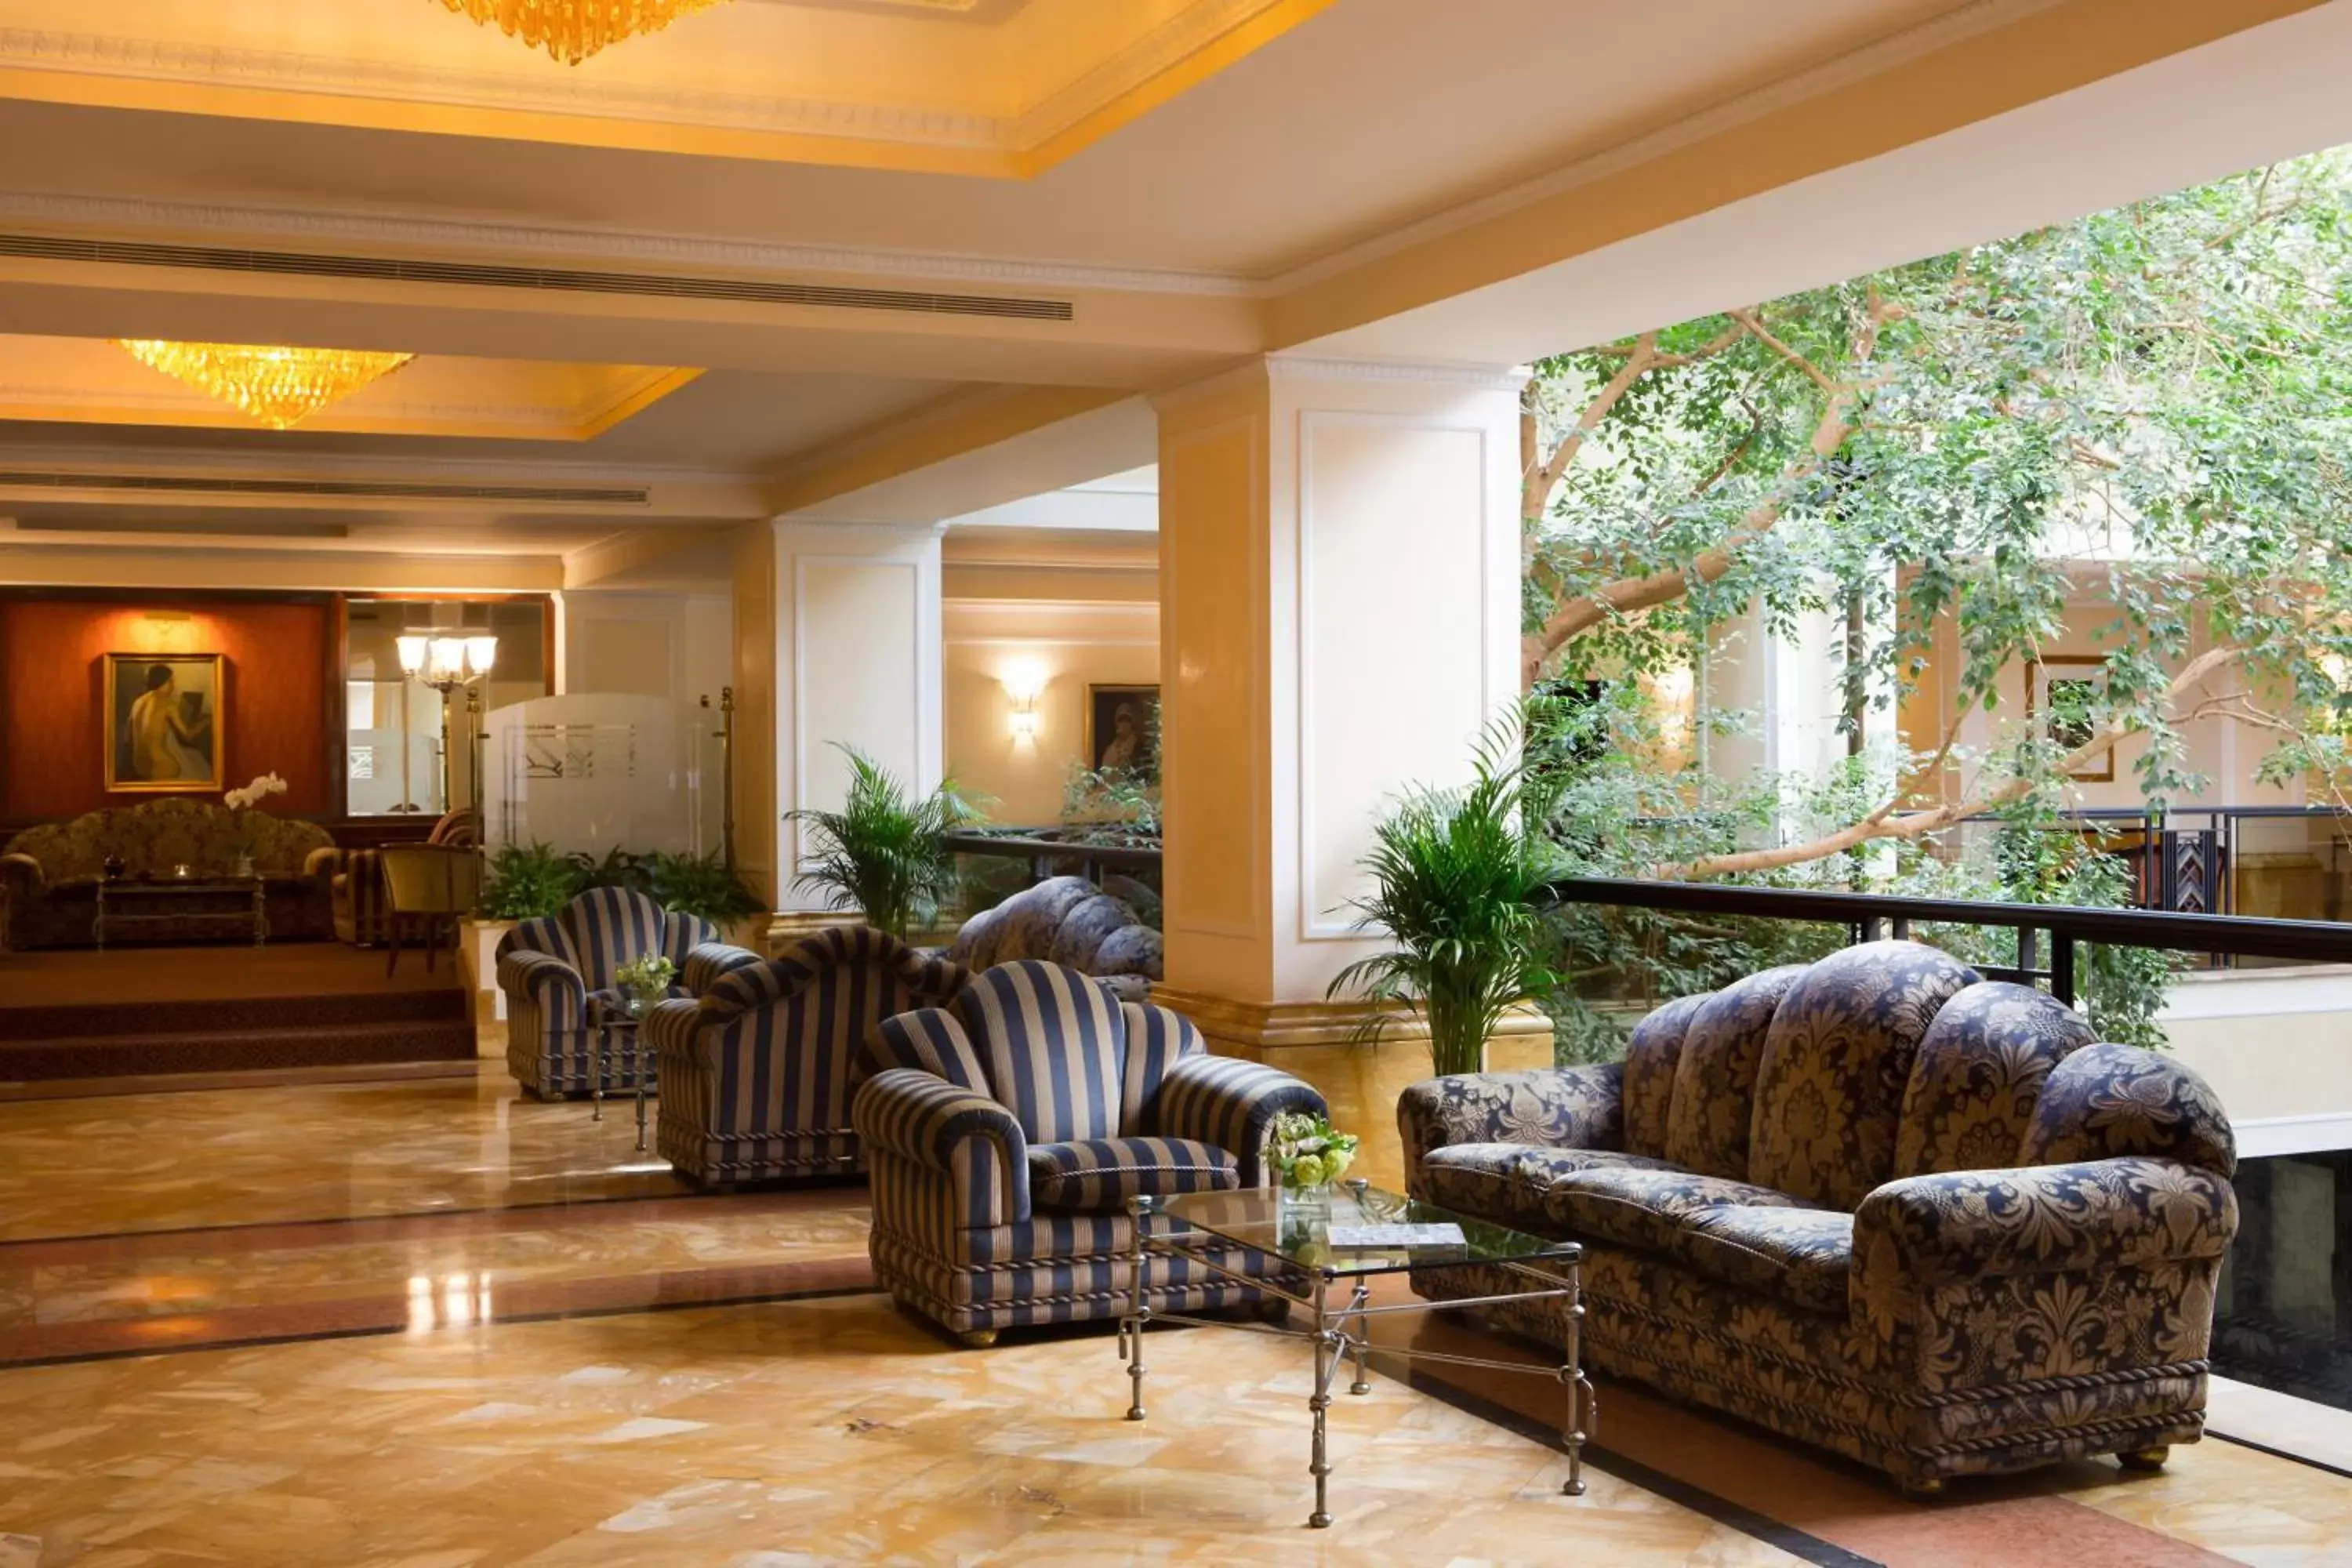 Lobby or reception, Lobby/Reception in Starhotels Du Parc